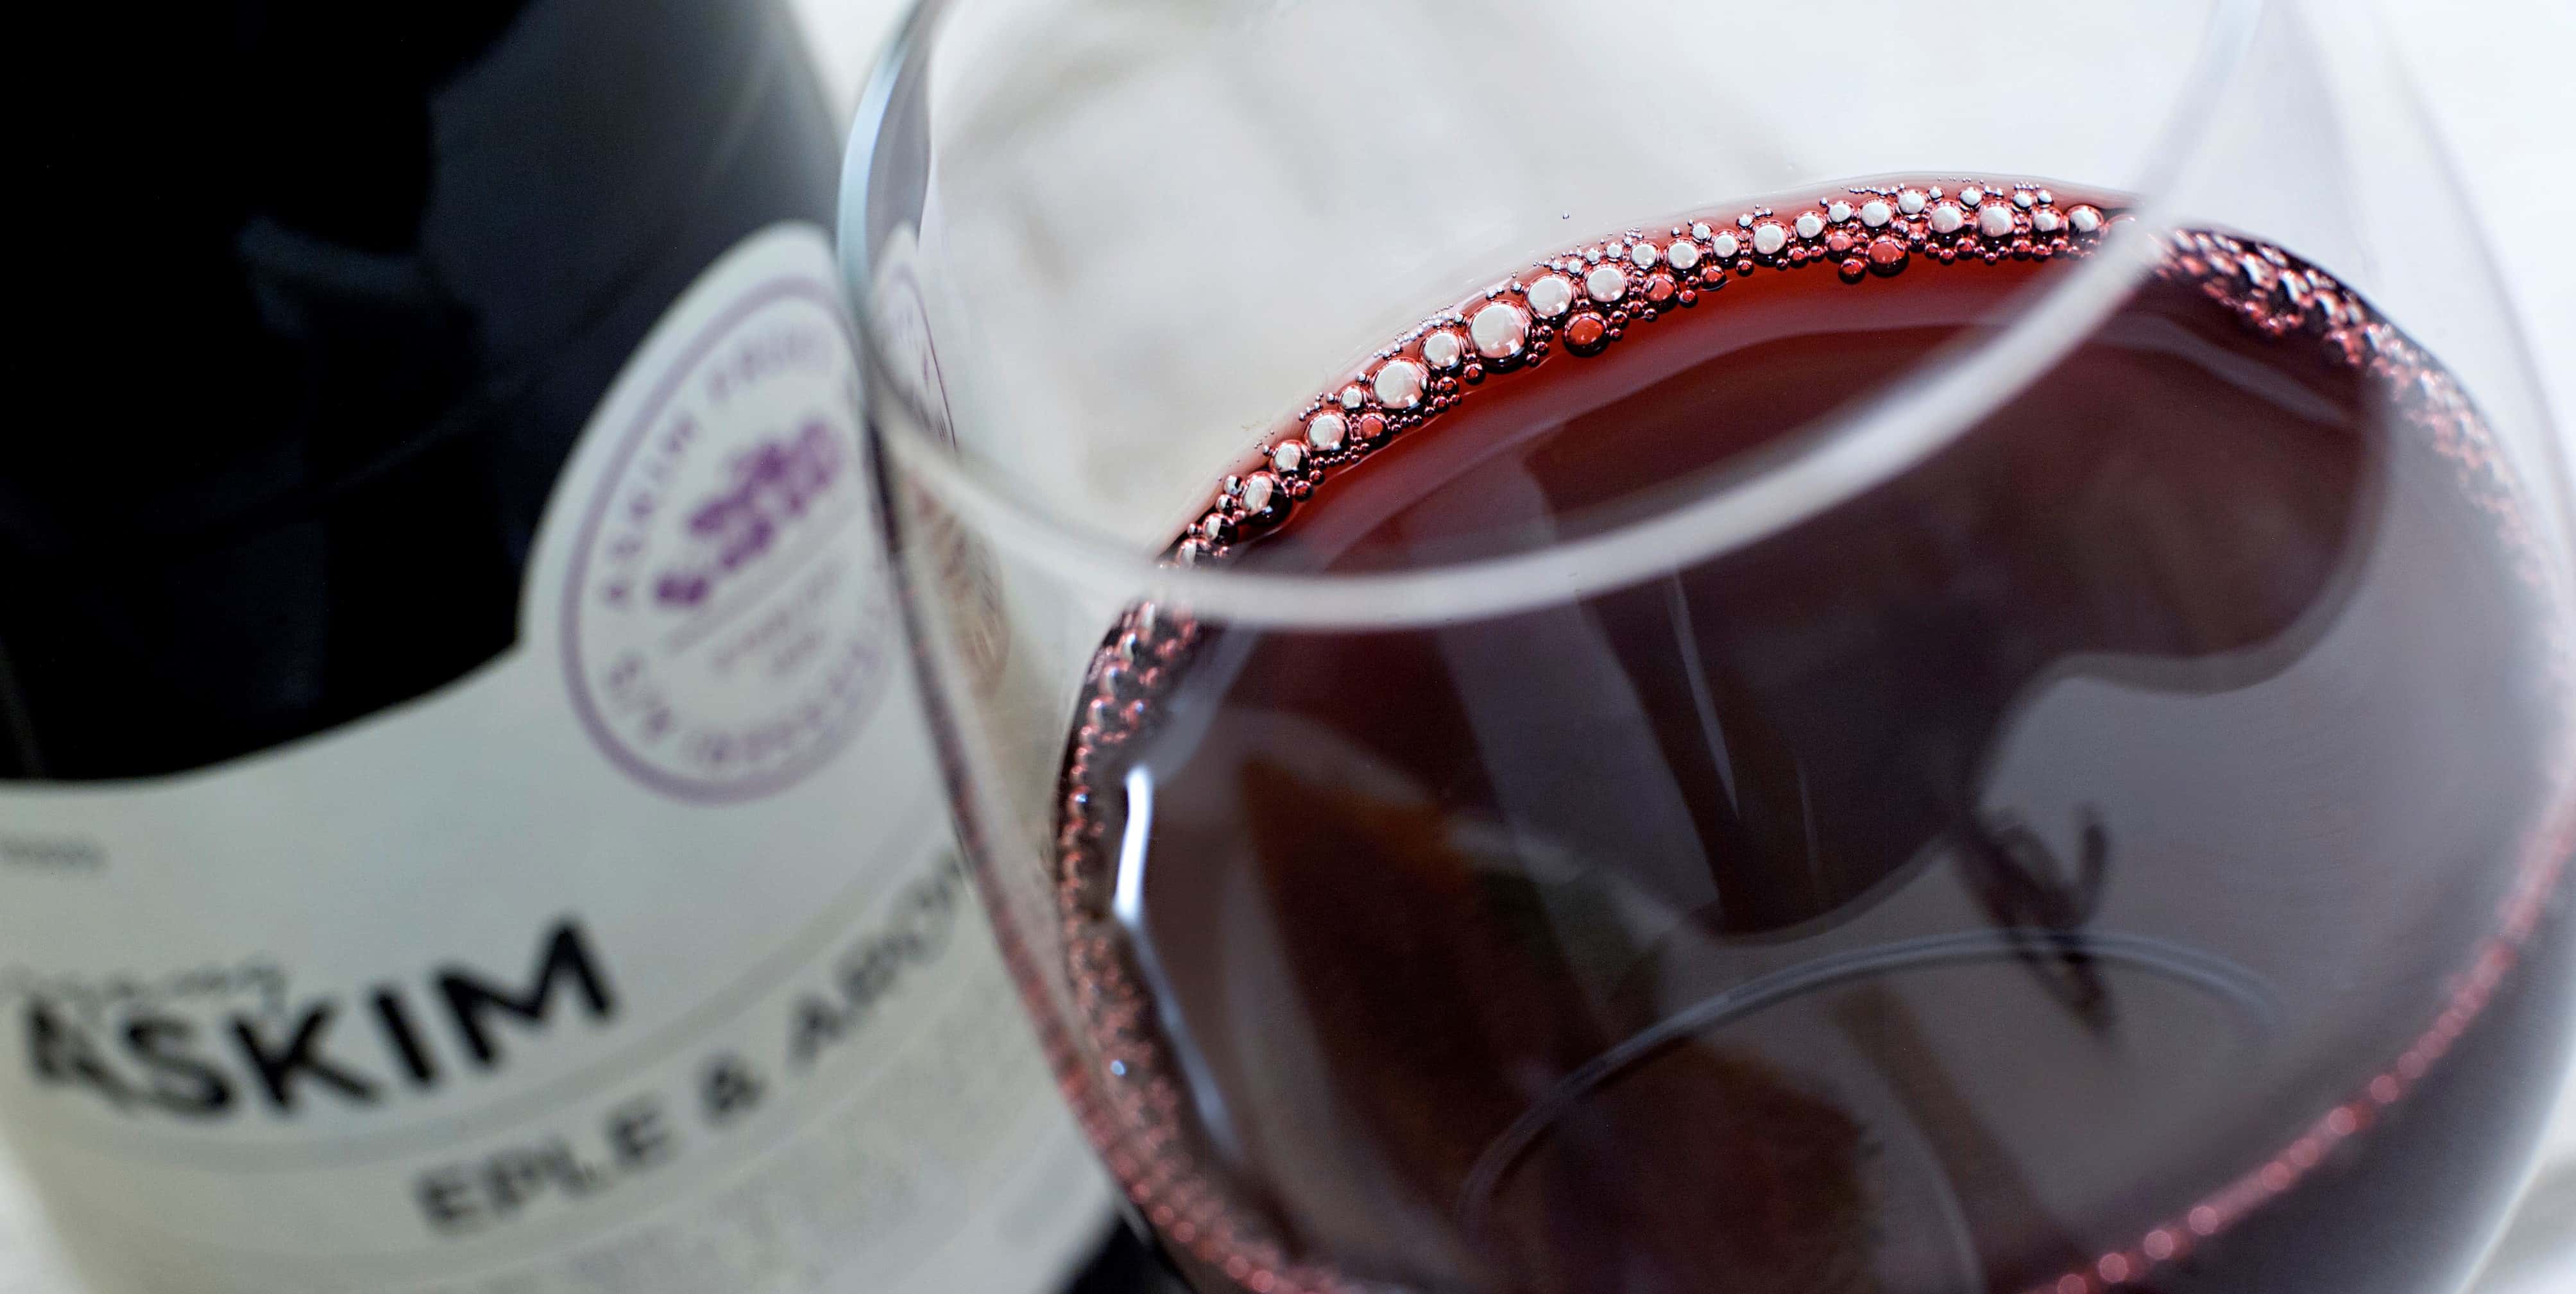 Bilde av Askim Årgang Argonia i vinglass, ved siden av en flaske med samme innhold. Drikken er lilla, og minner om rødvin på farge. Lagt pent frem på en grå duk.